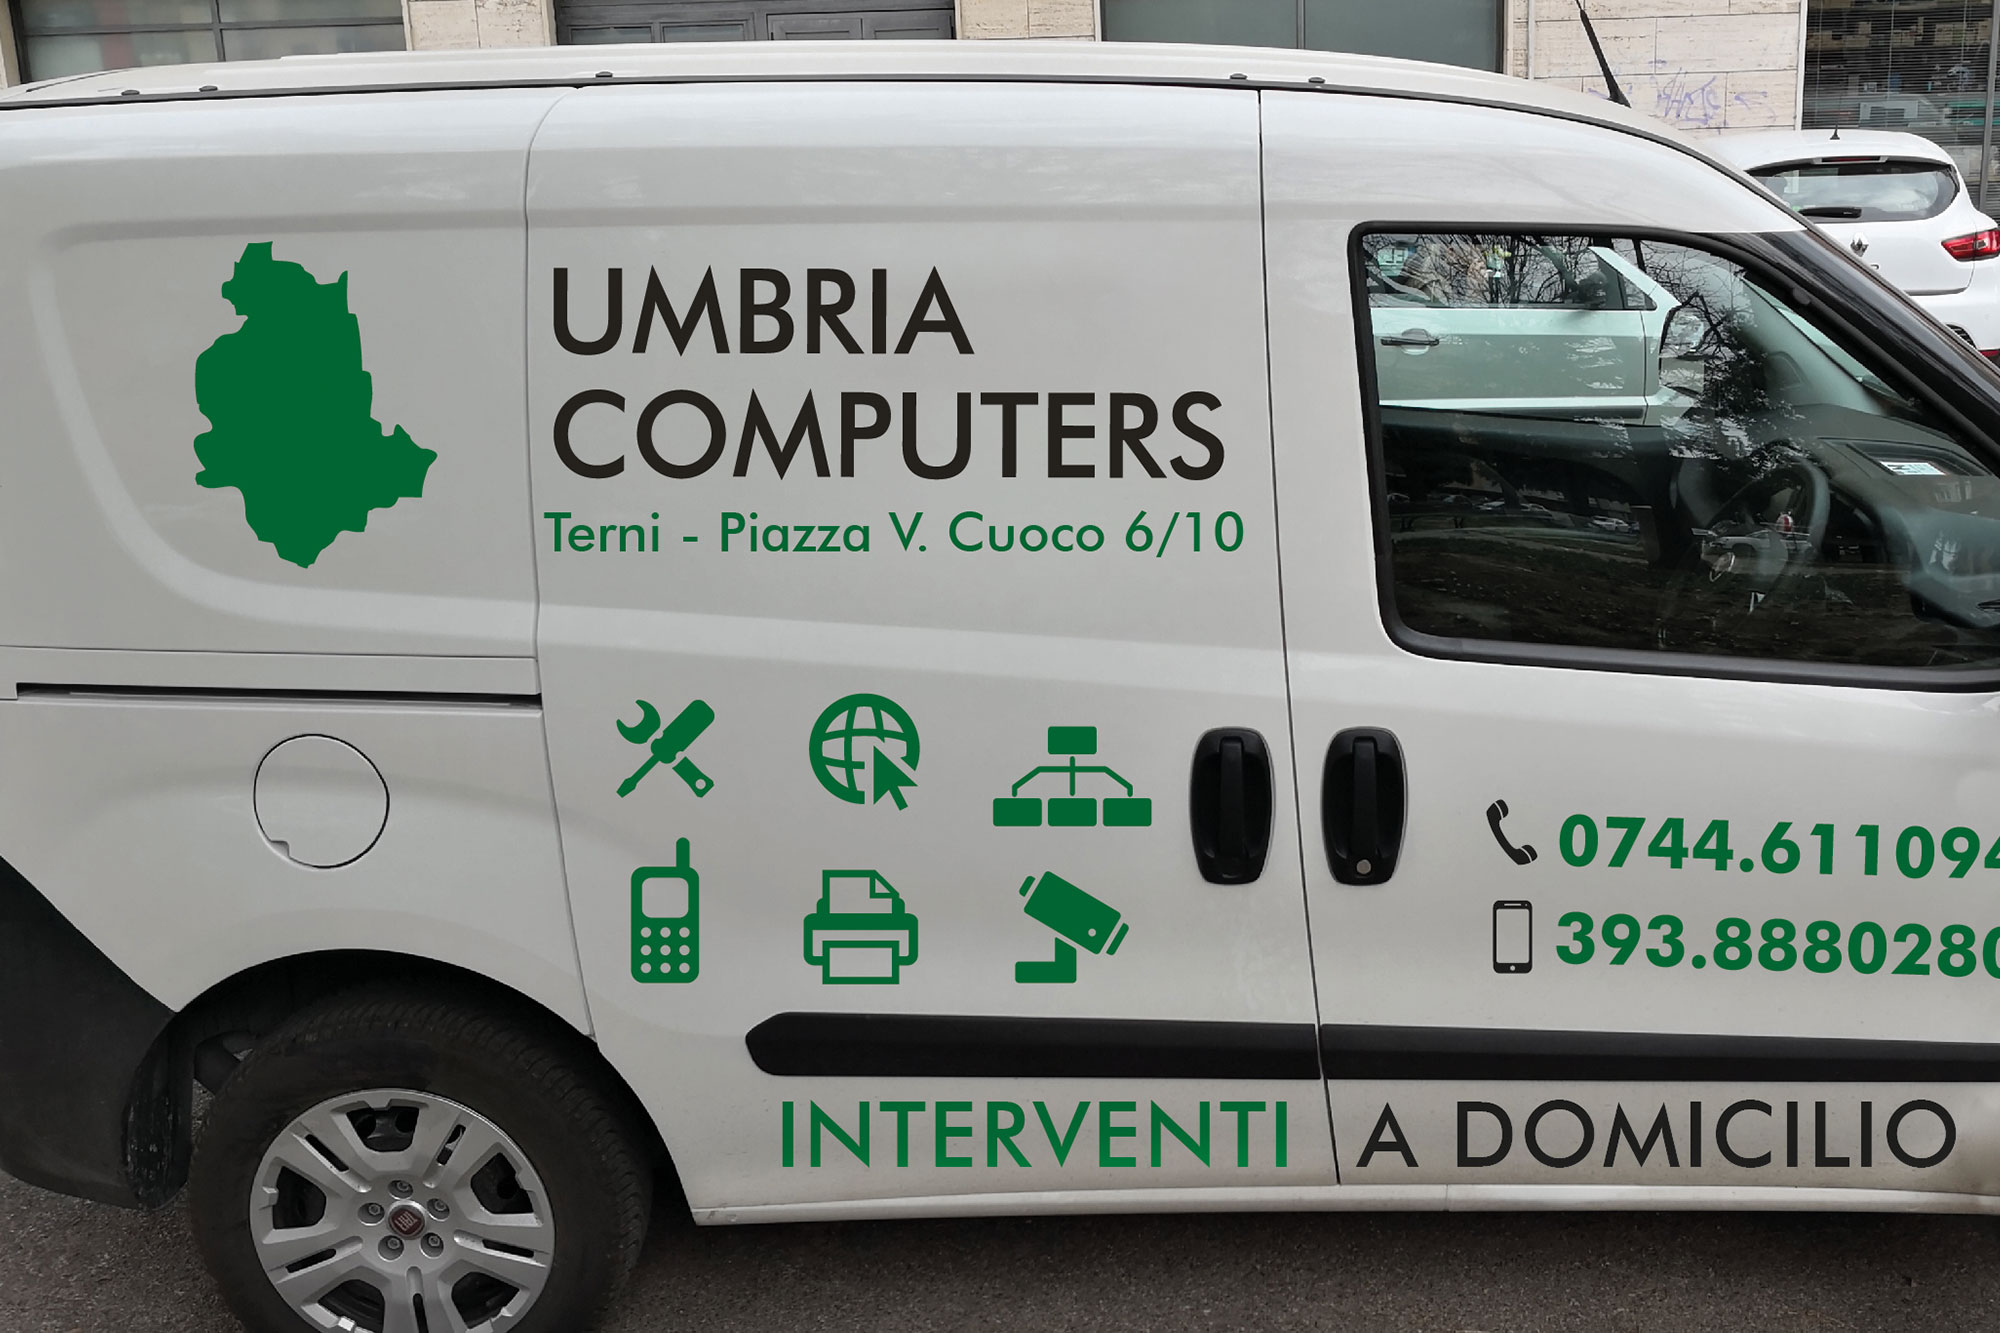 Umbria Computers furgone